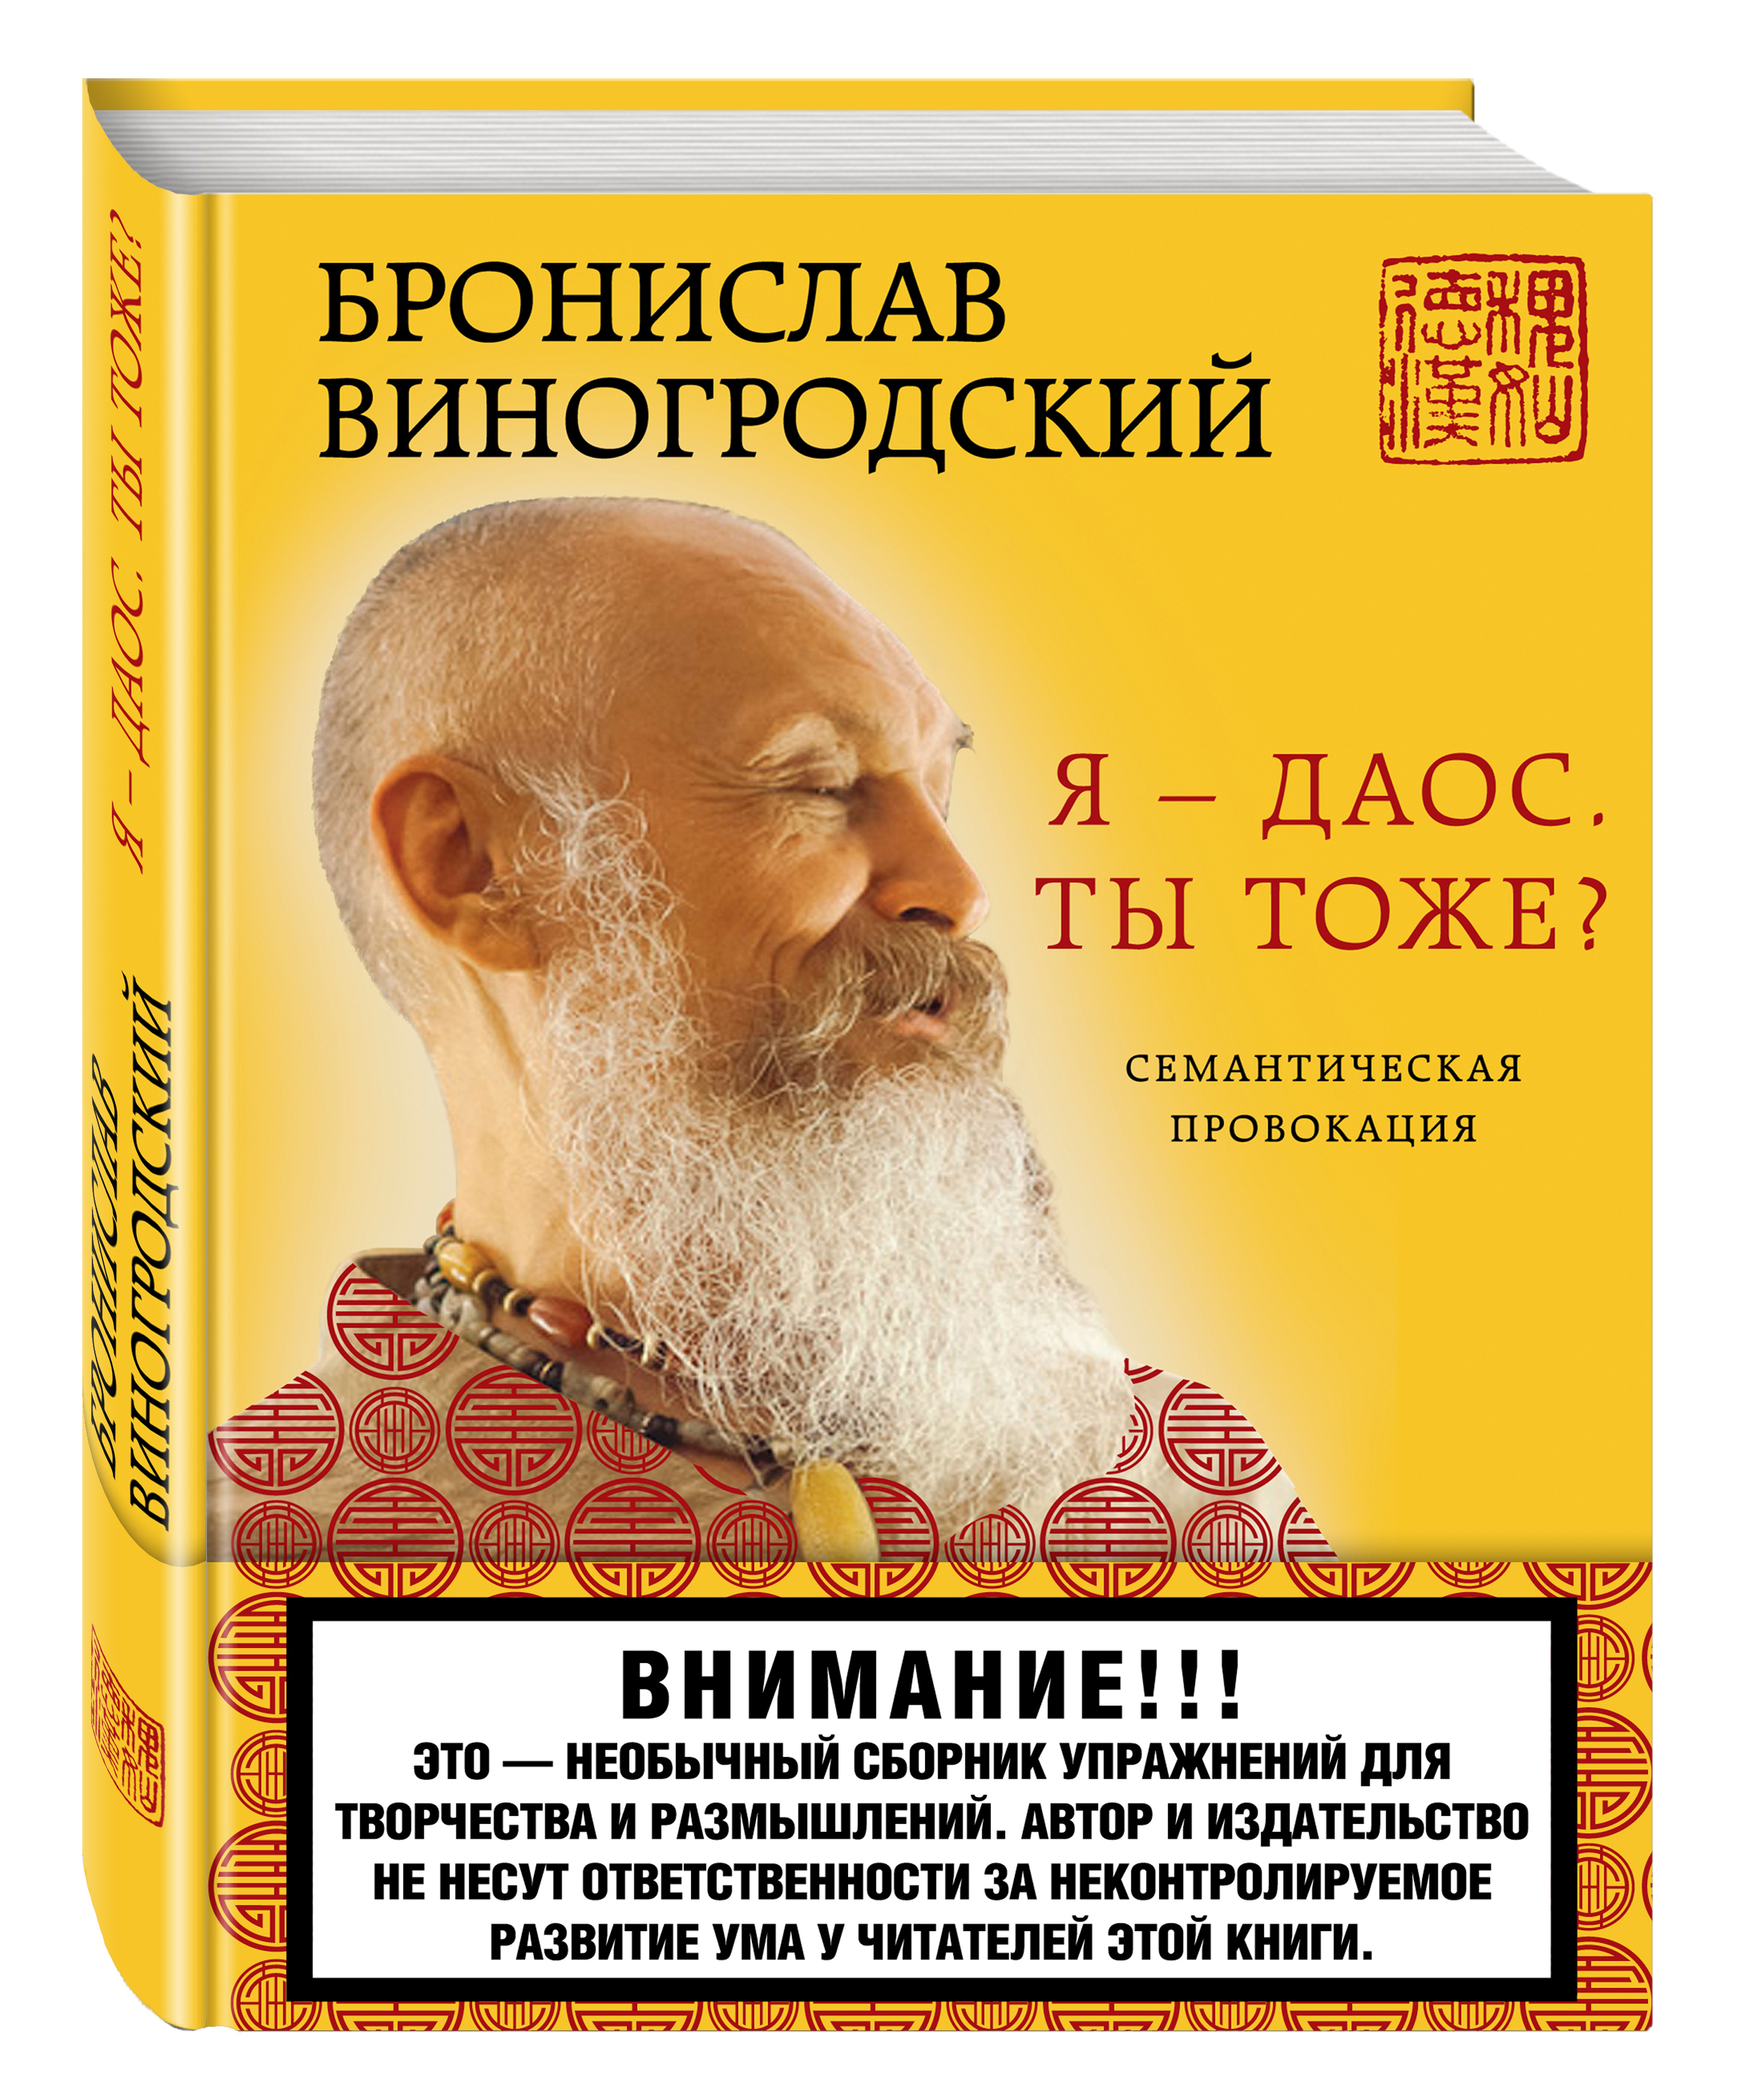 Обложка книги Виногродский Бронислав Брониславович: Я - даос. Ты тоже?